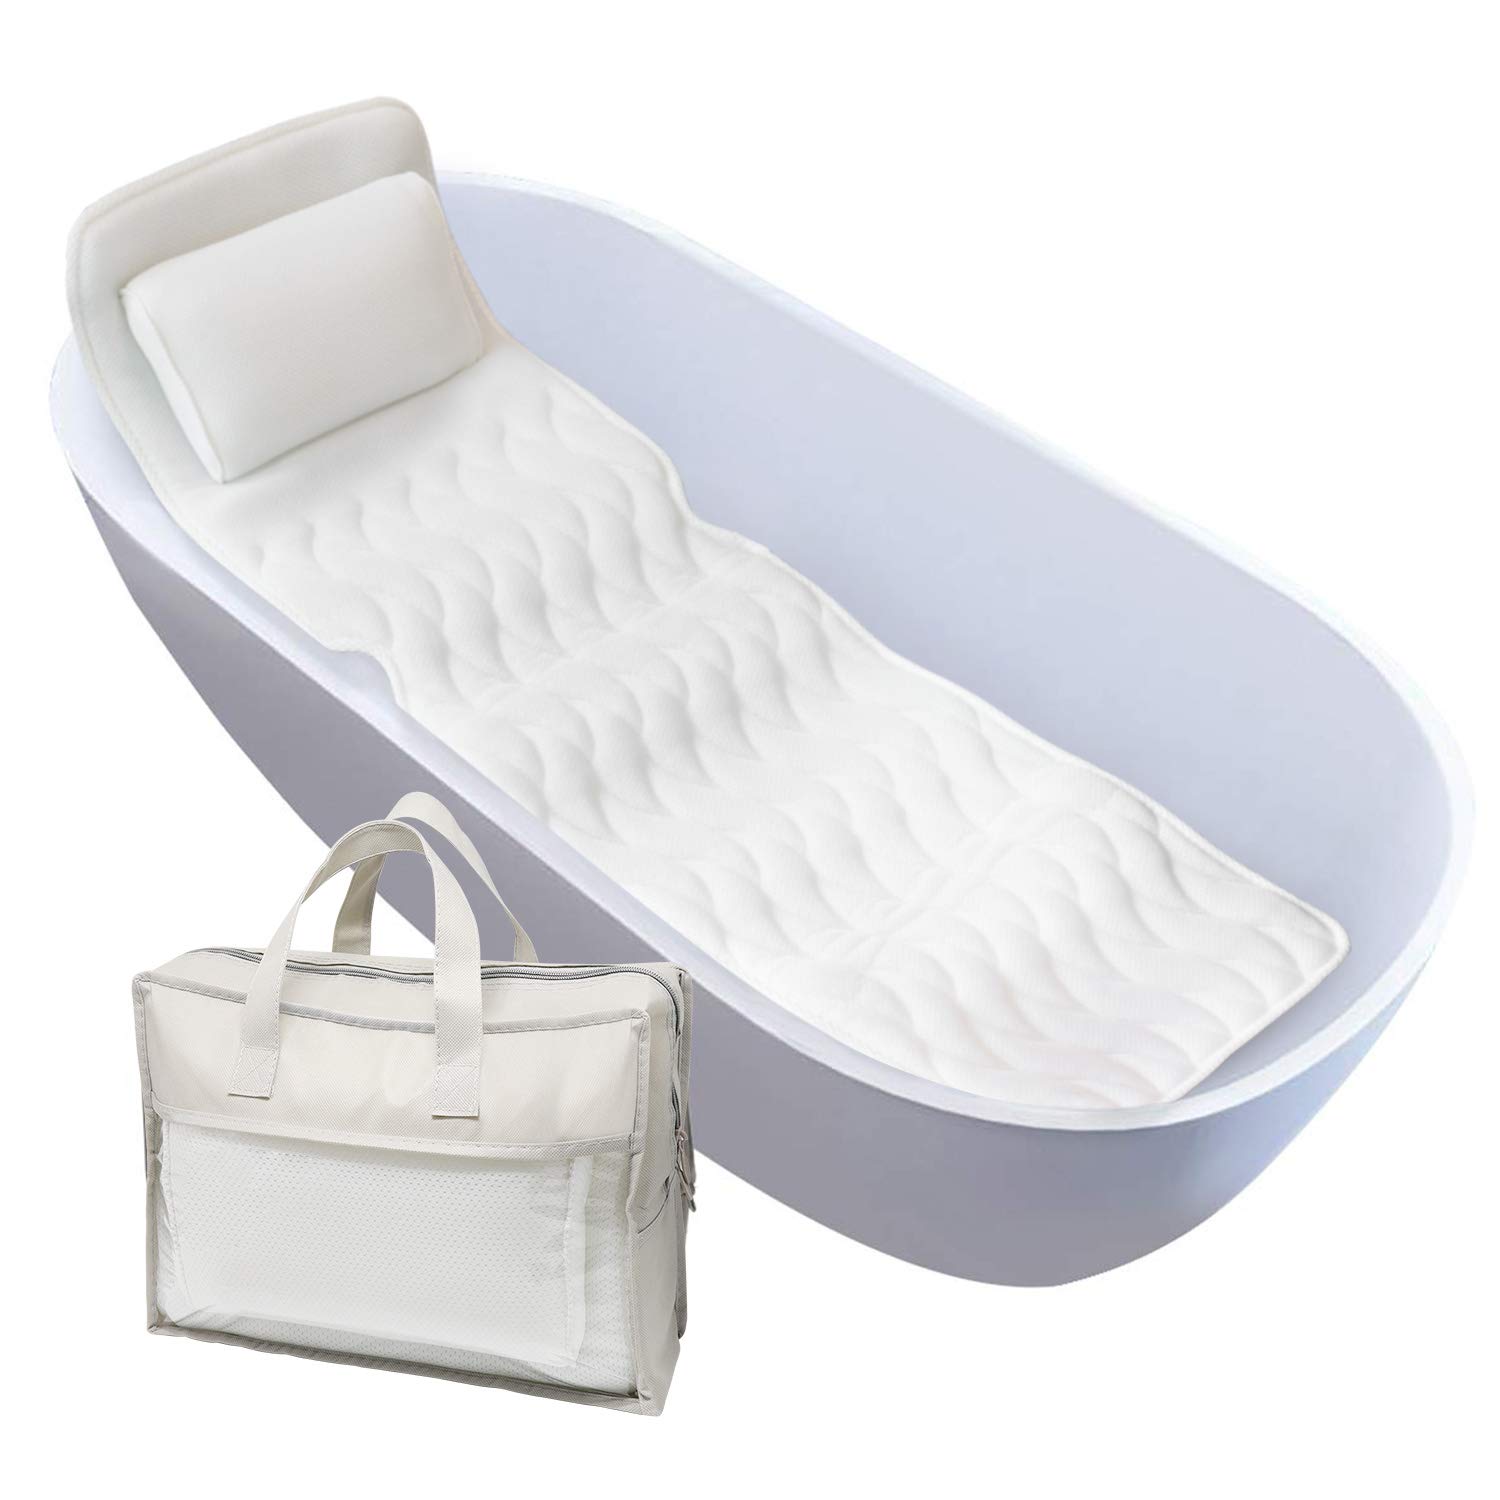 Luxury Bath Tub Spa Booster Seat, Bathtub Cushion To Sit On